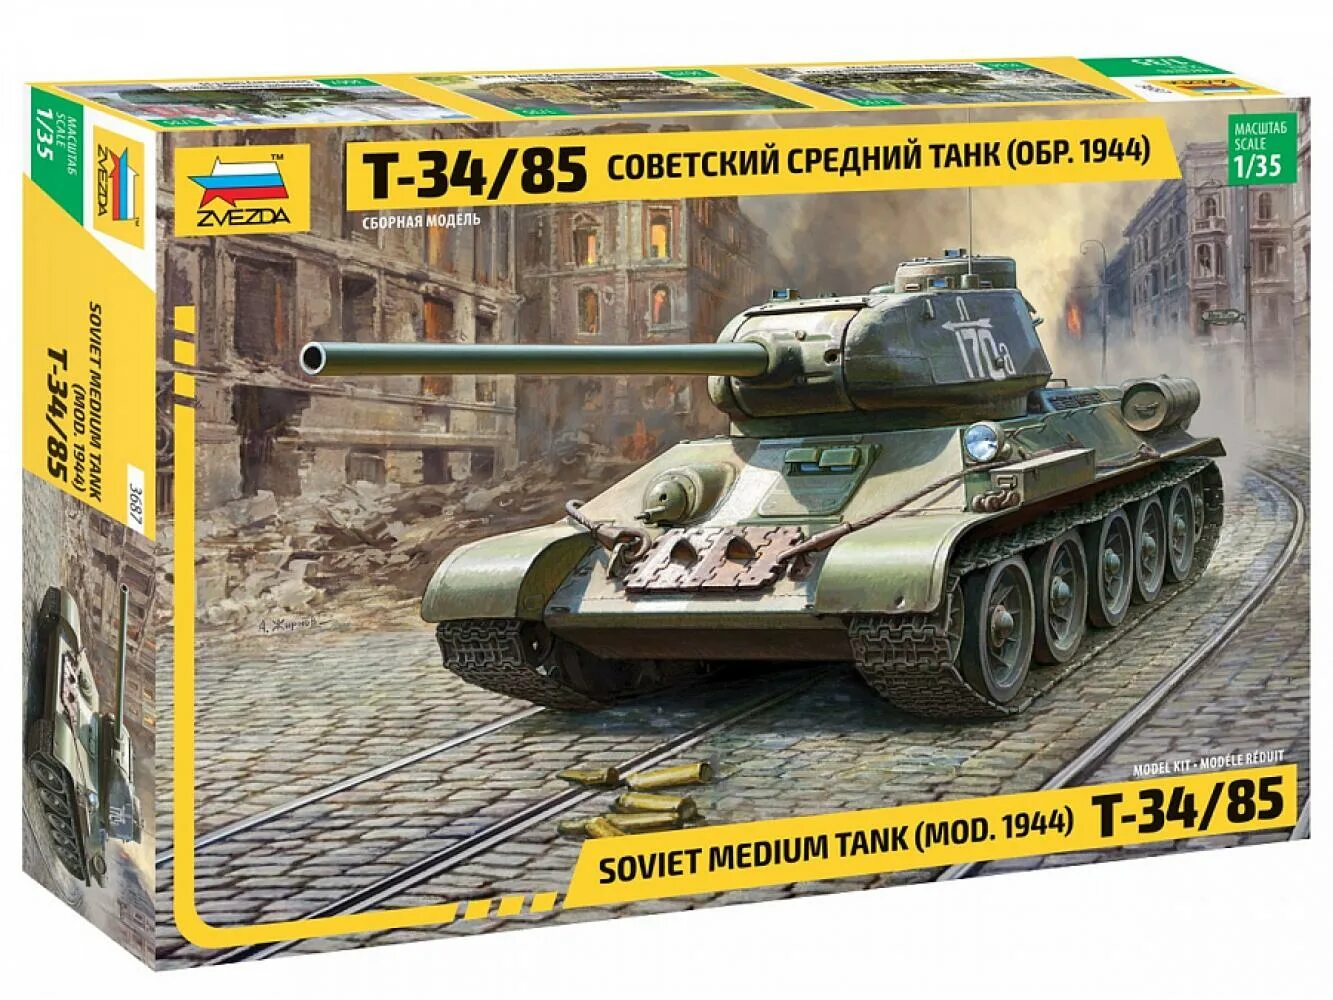 Сборная модель zvezda Советский средний танк т-34/85. Танк т 34 звезда модель. Сборная модель танка т 34 звезда. Т 34 85 модель звезда. Сборные модели звезда танки